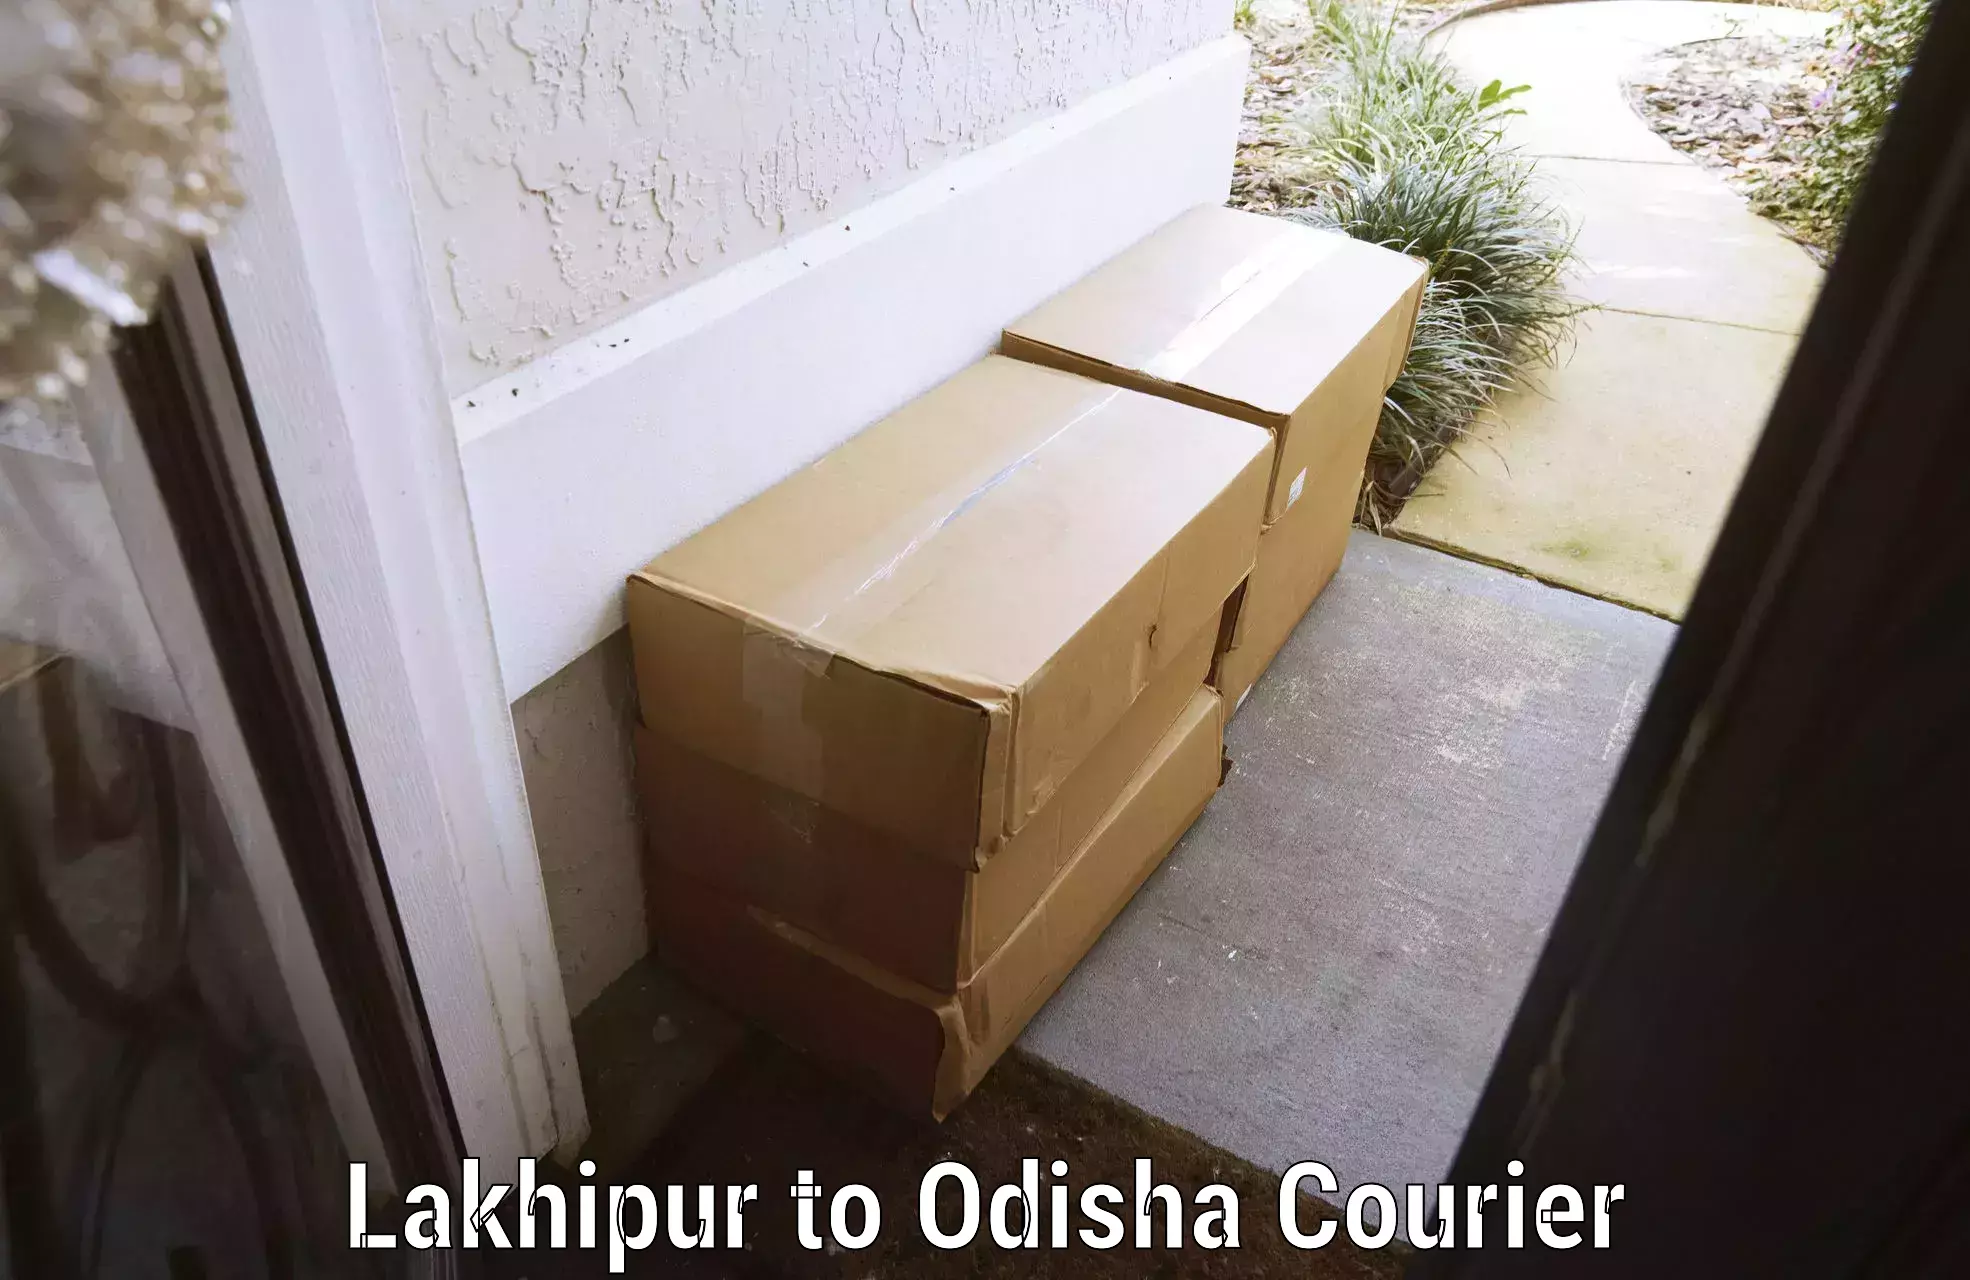 Baggage transport network Lakhipur to Polasara